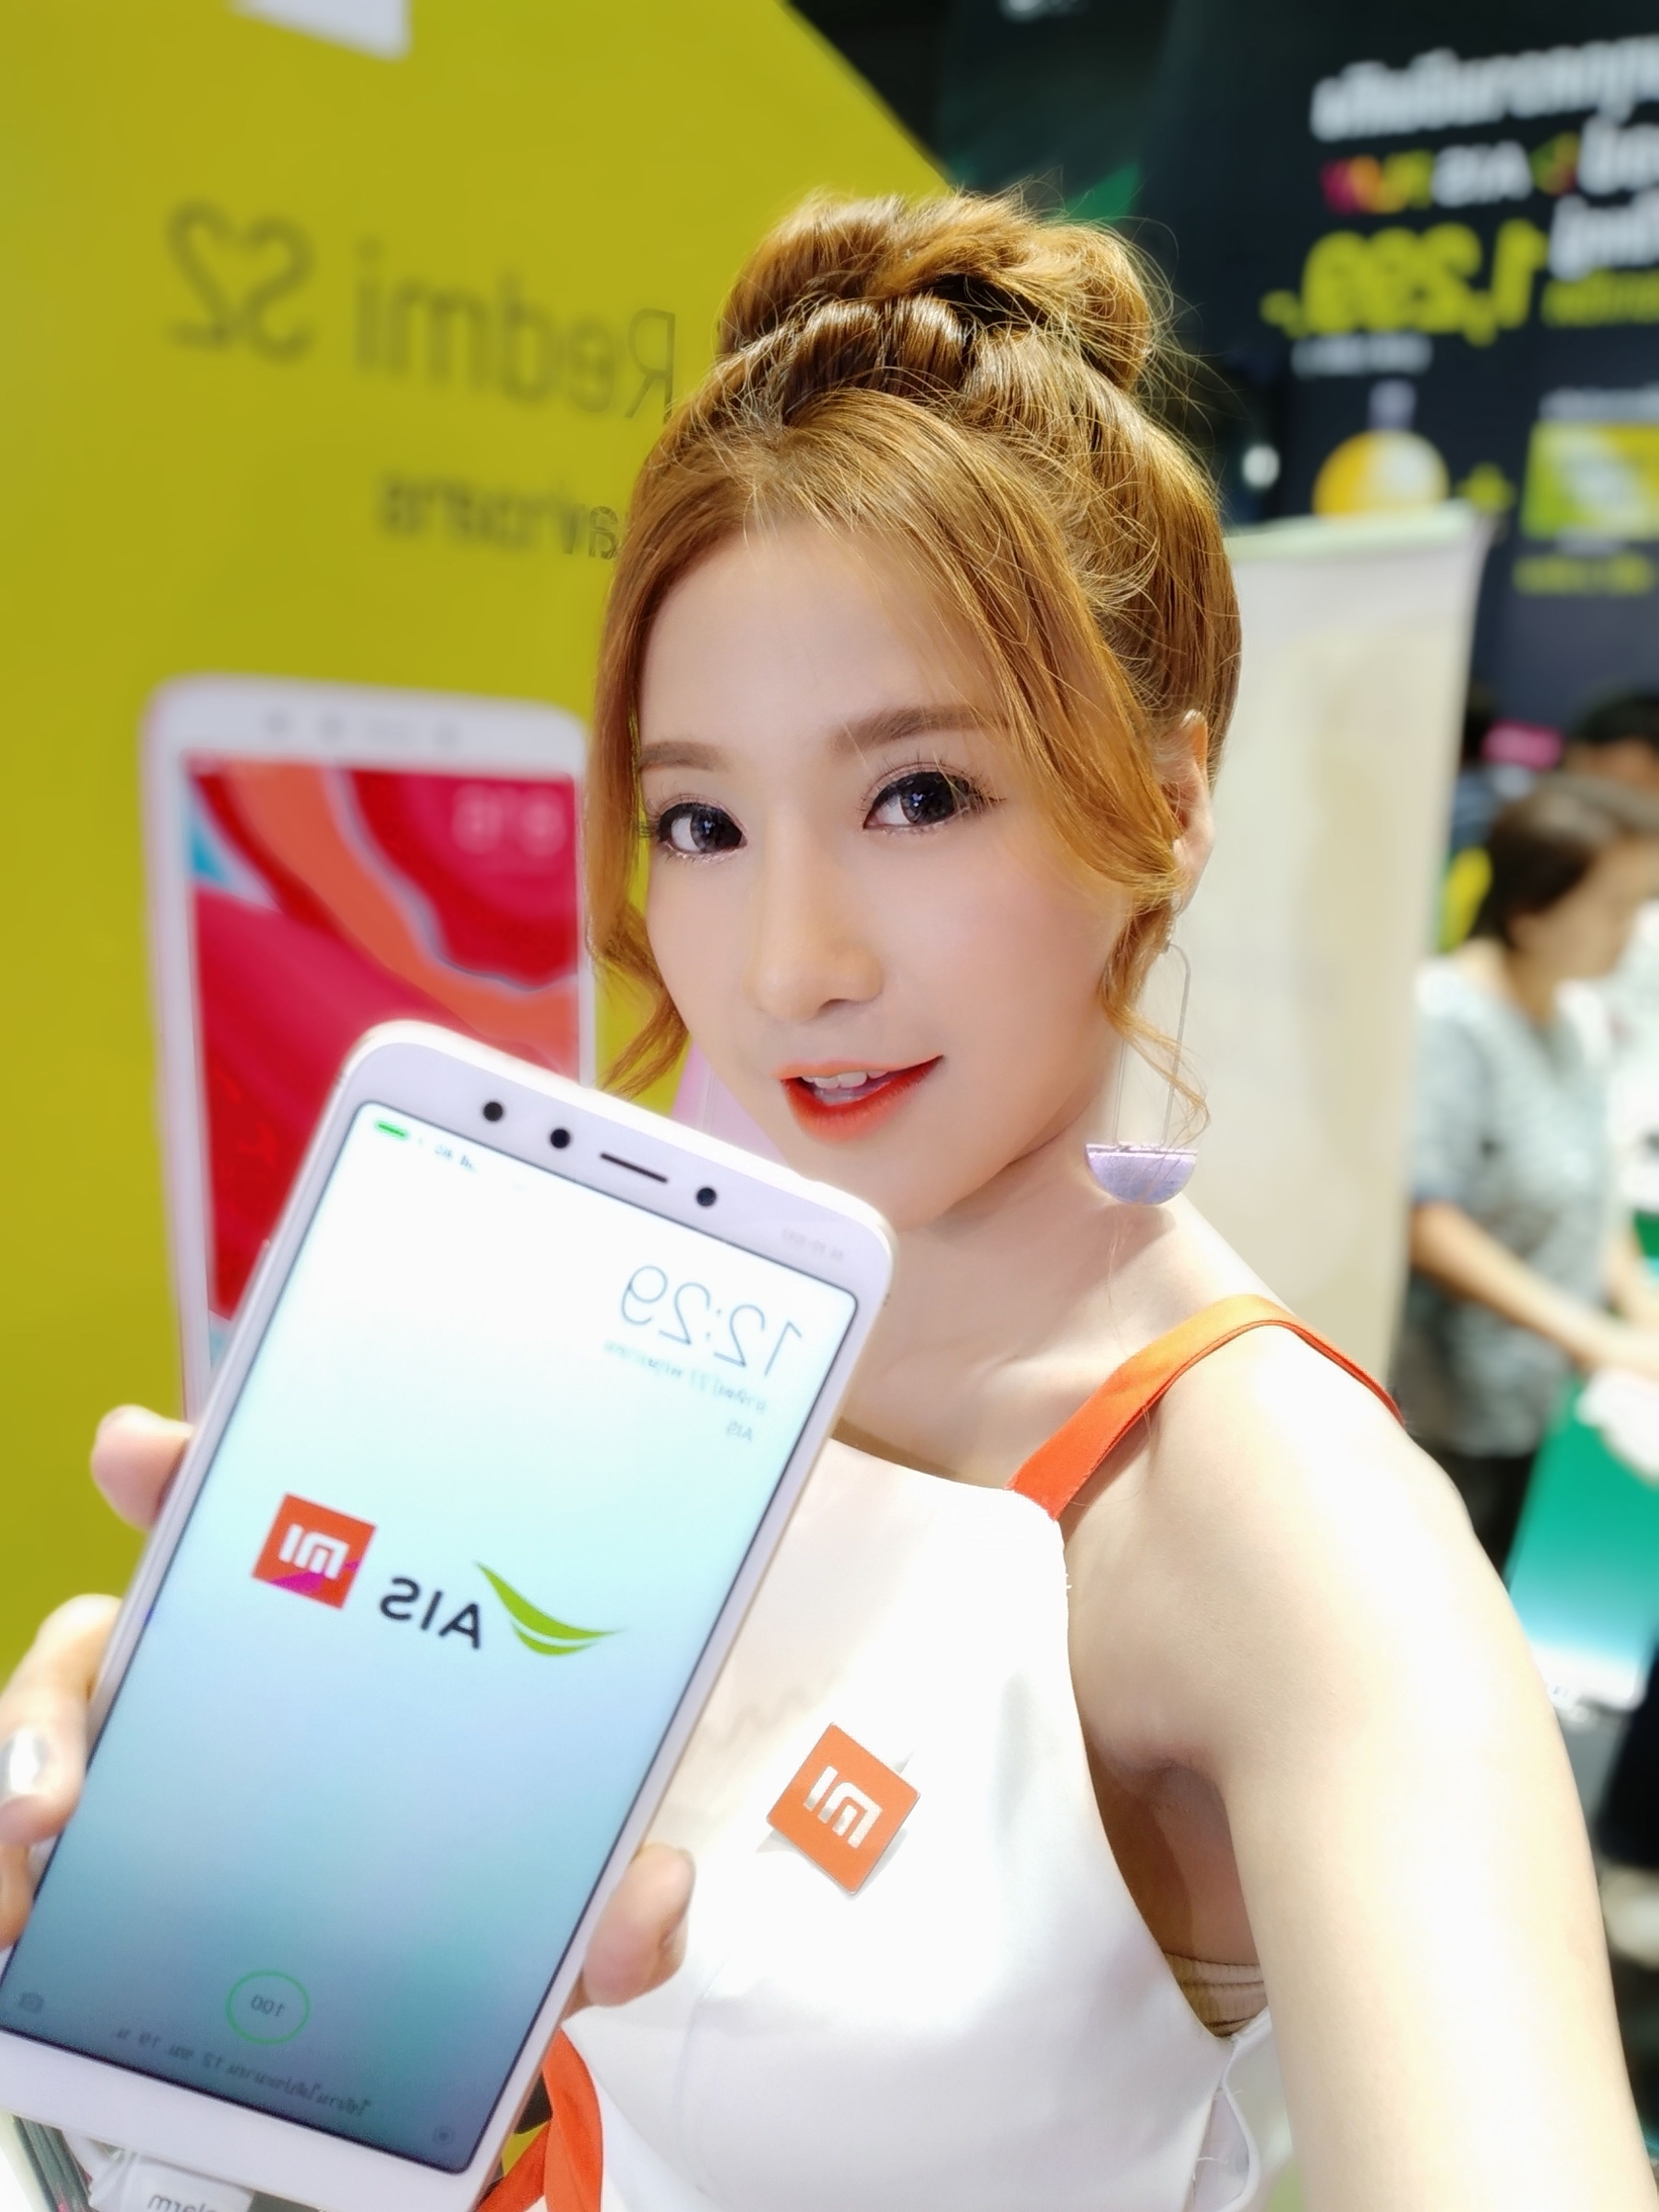 Preview | พรีวิว Xiaomi Redmi S2 อีกหนึ่งรุ่นสุดคุ้ม ที่รอลุ้นราคาเปิดตัวกับ AIS เร็วๆ นี้